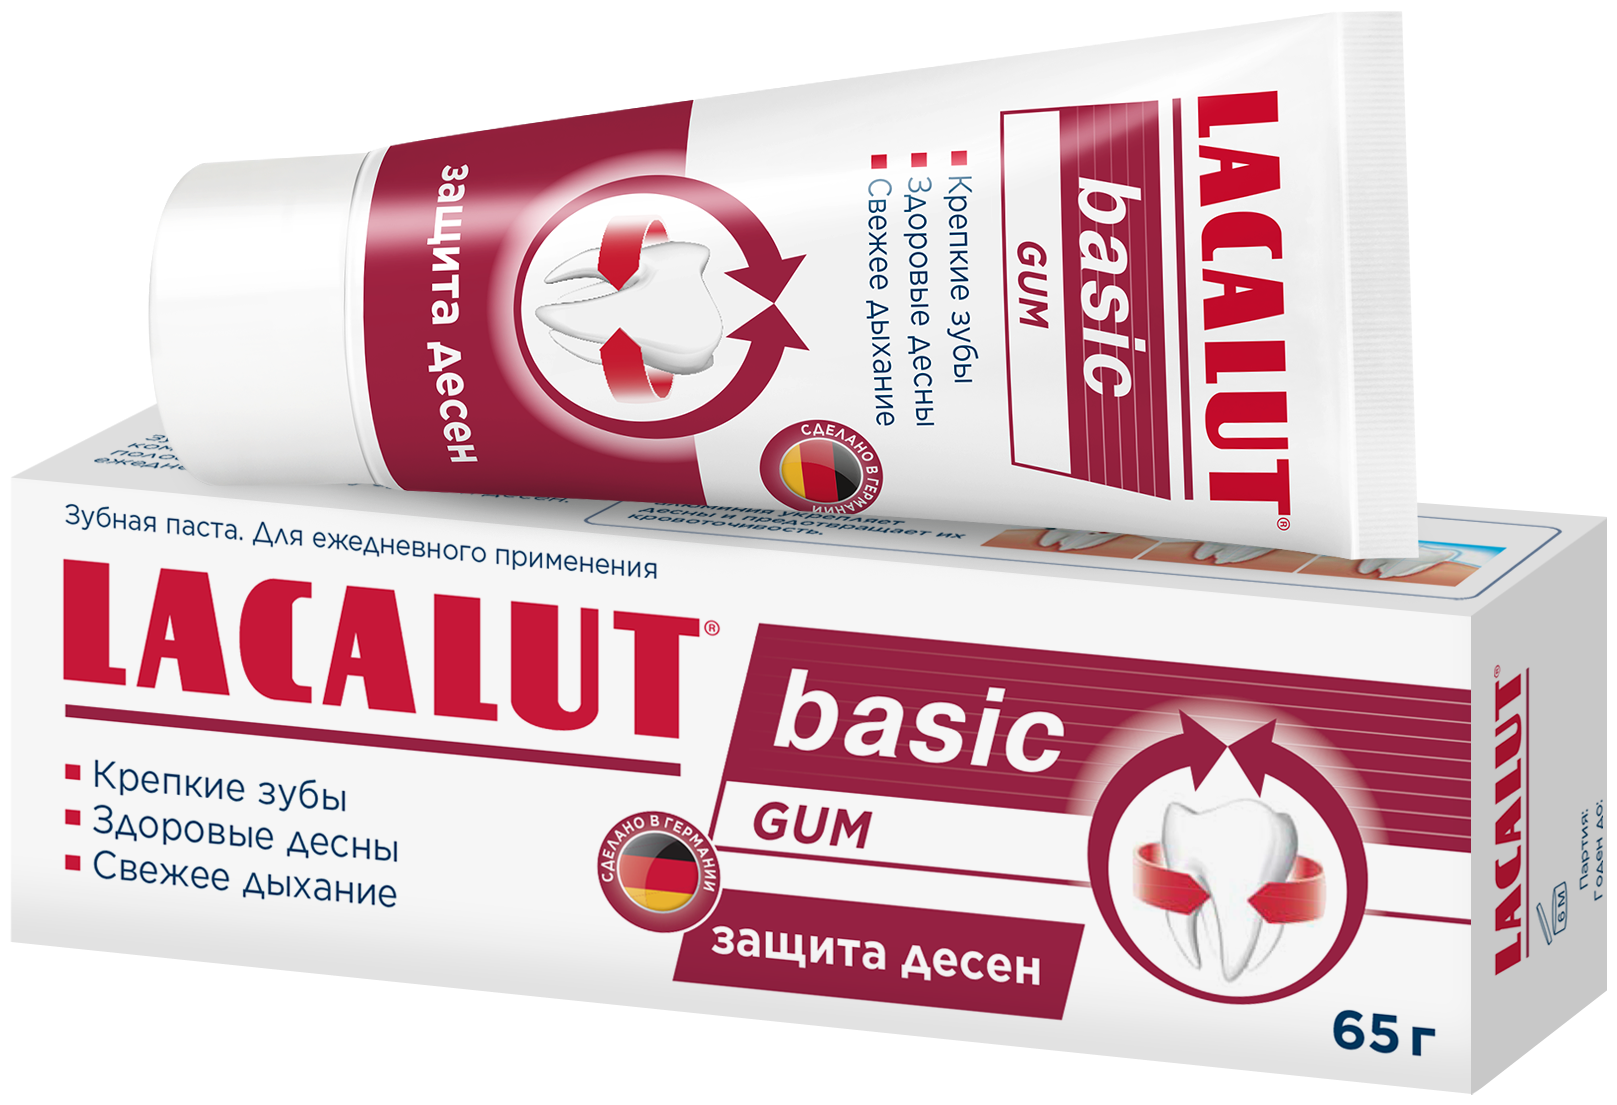 Lacalut Зубная паста Basic Gum для защиты десен, 65 г (Lacalut, ) - фото №1